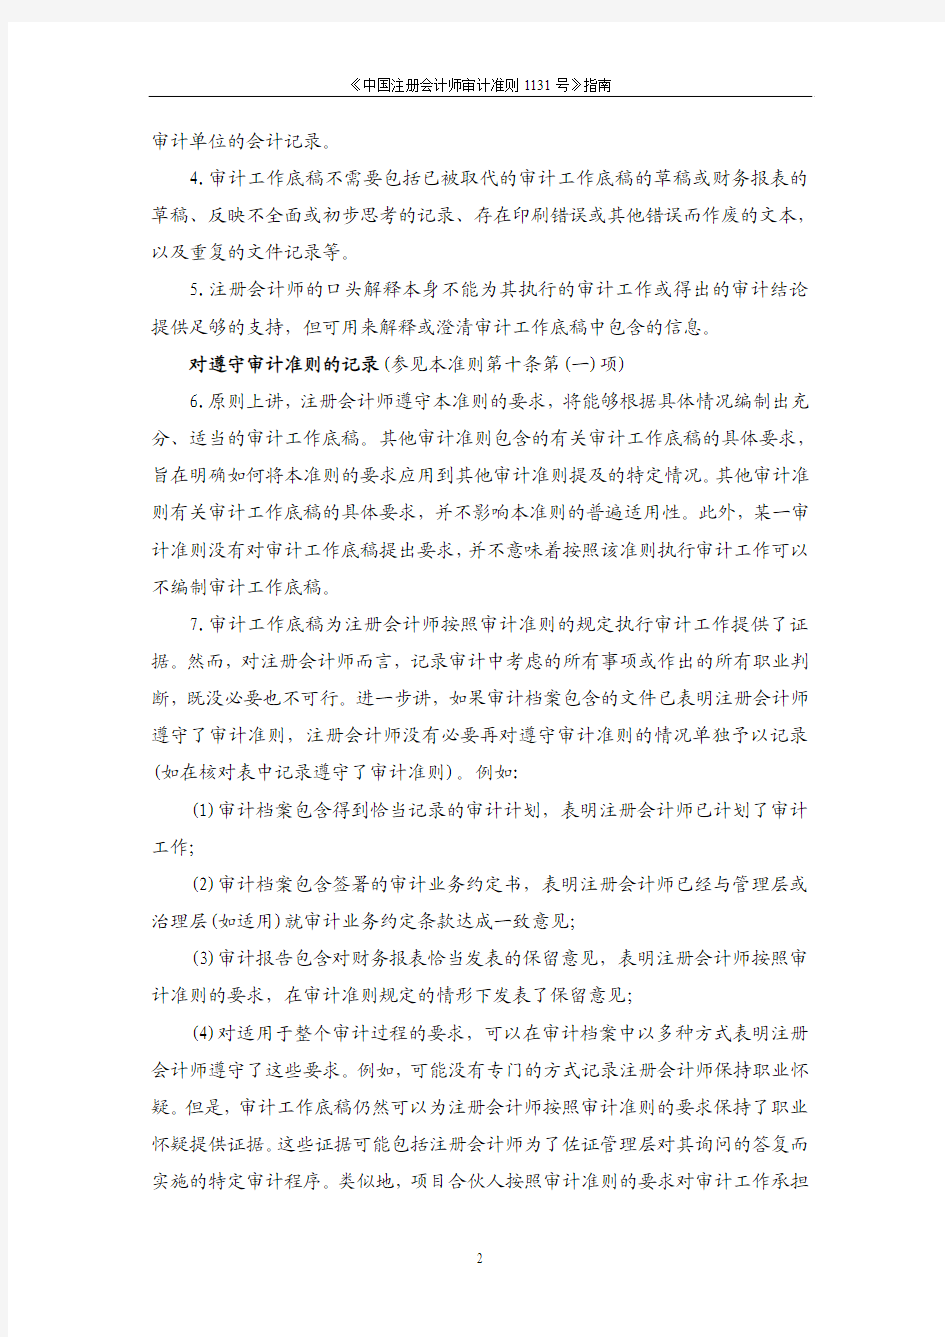 《中国注册会计师审计准则第1131号指南》